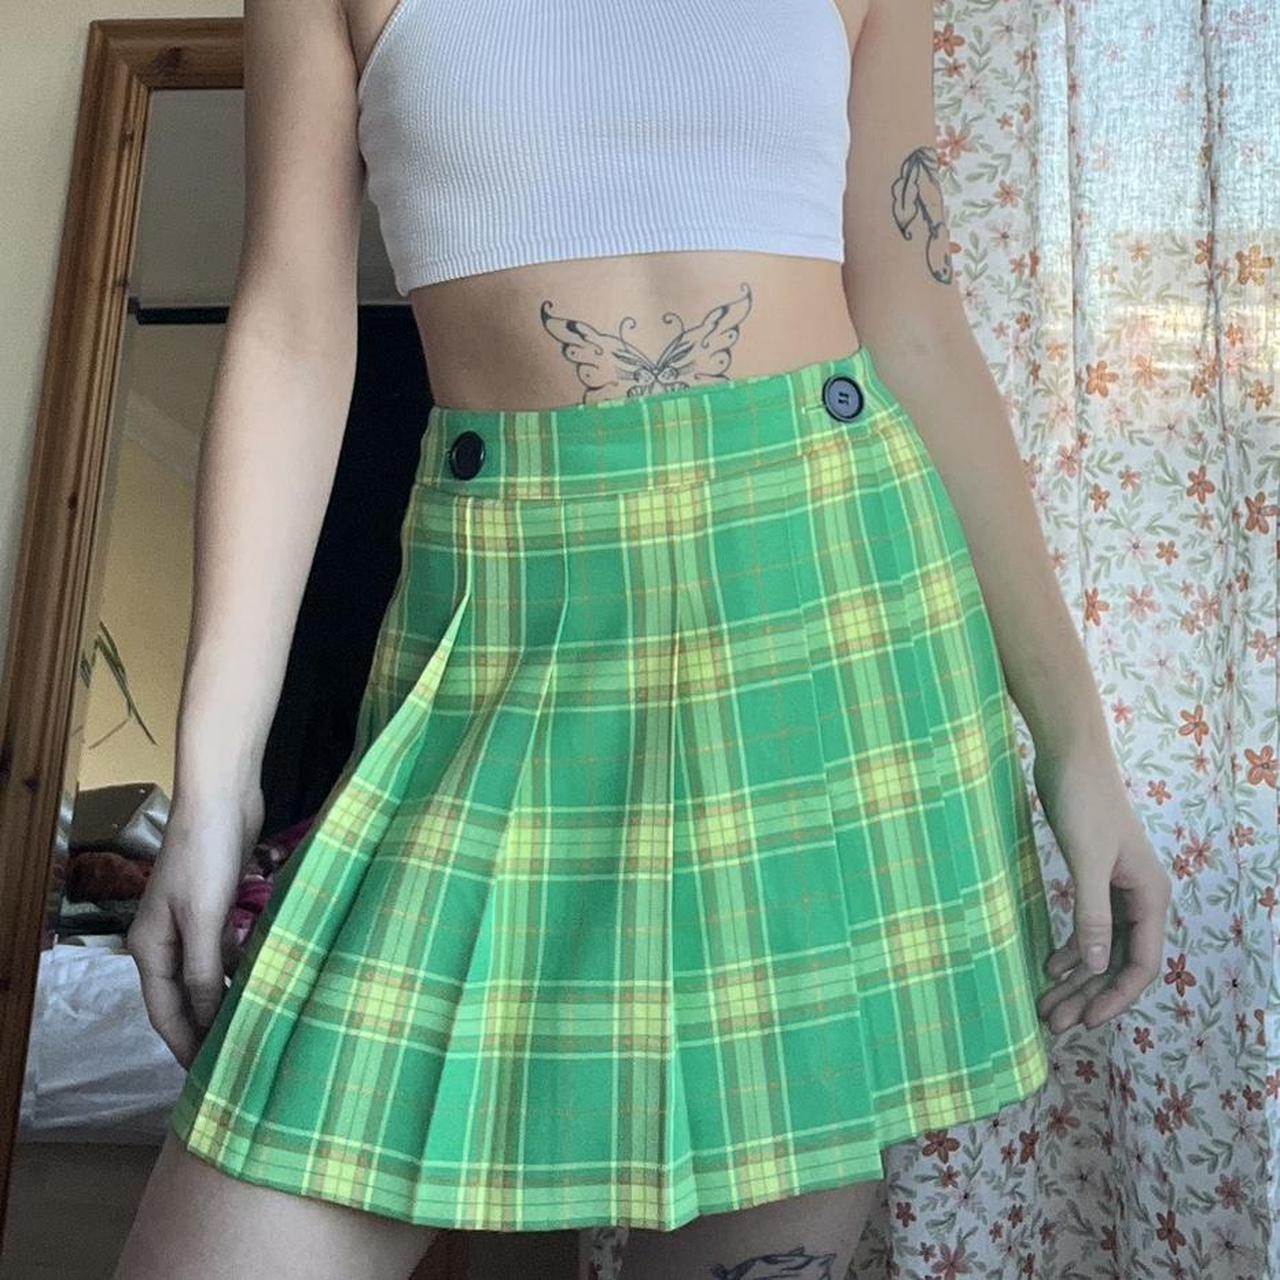 Gestuz Frayagz Mw Mini Skirt – skirts – shop at Booztlet